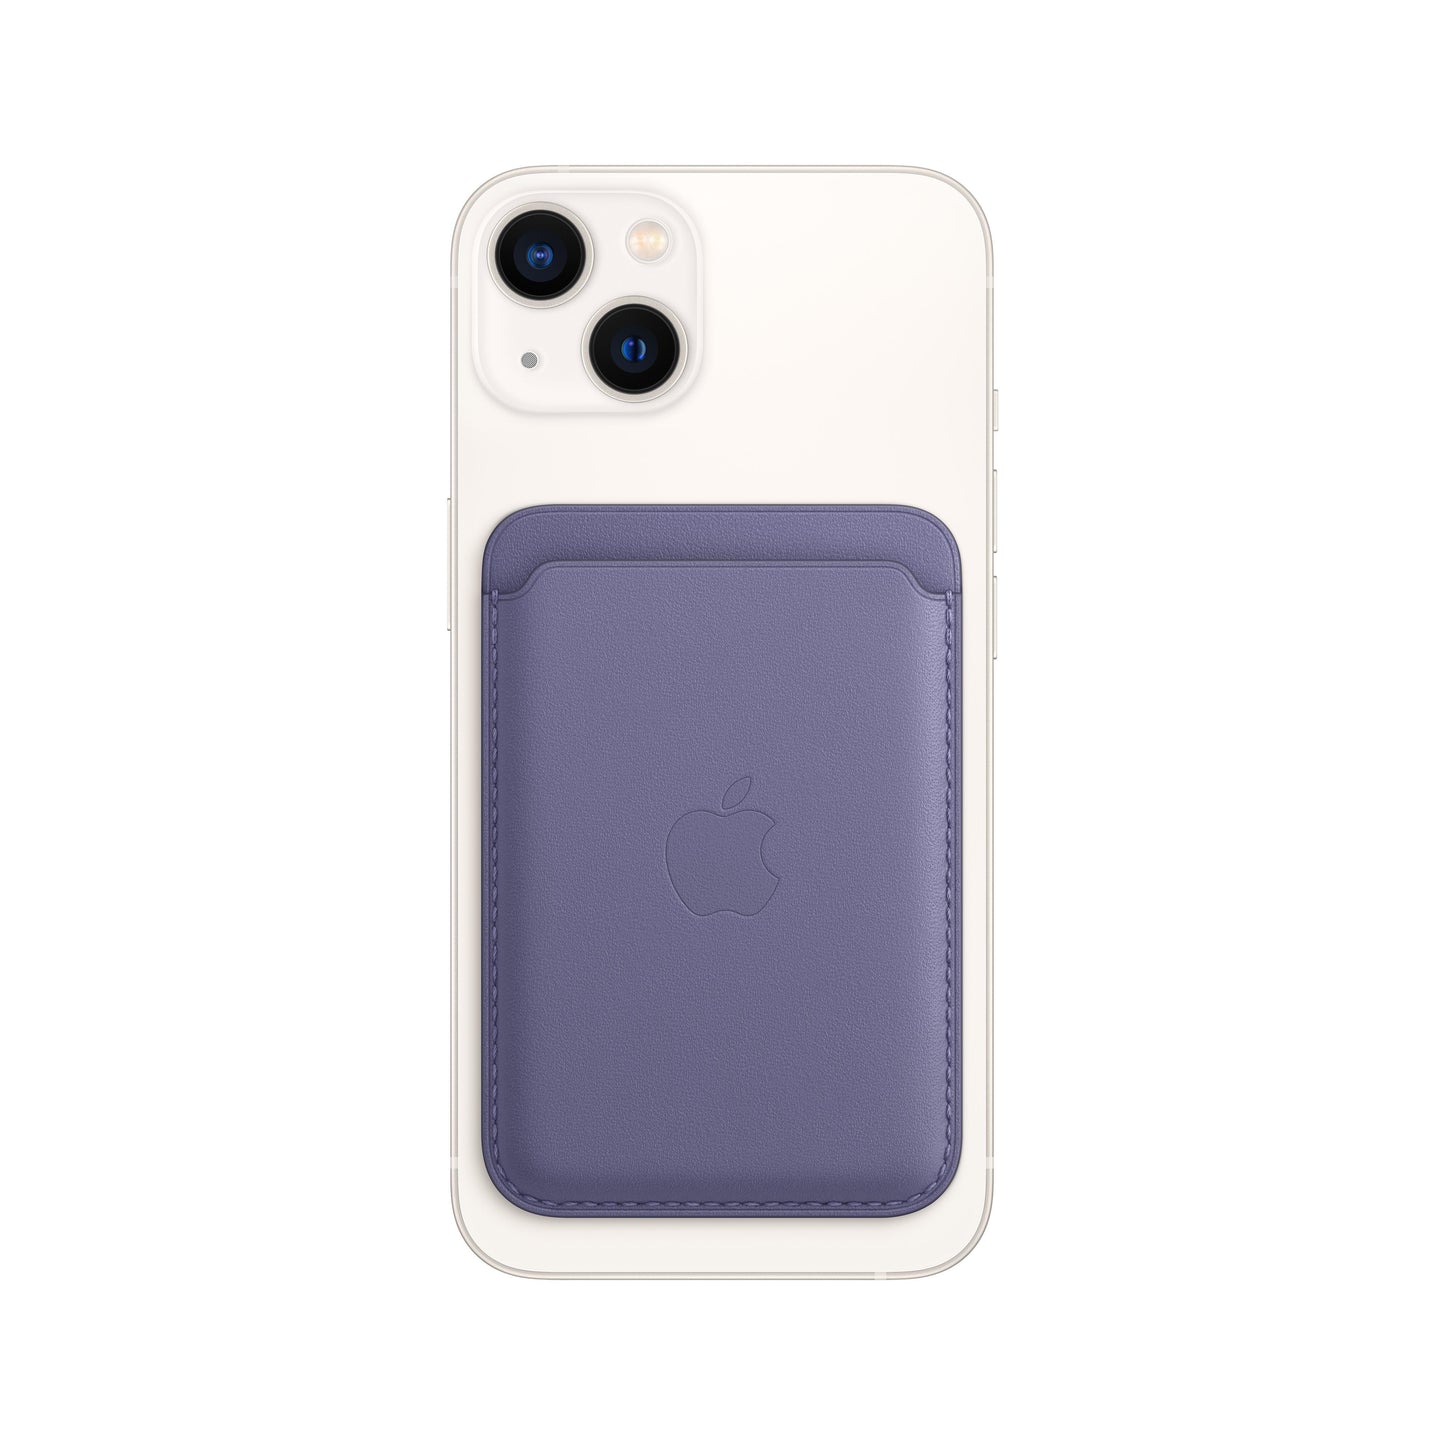 Cartera Apple iPhone MagSafe Piel – Amadtech